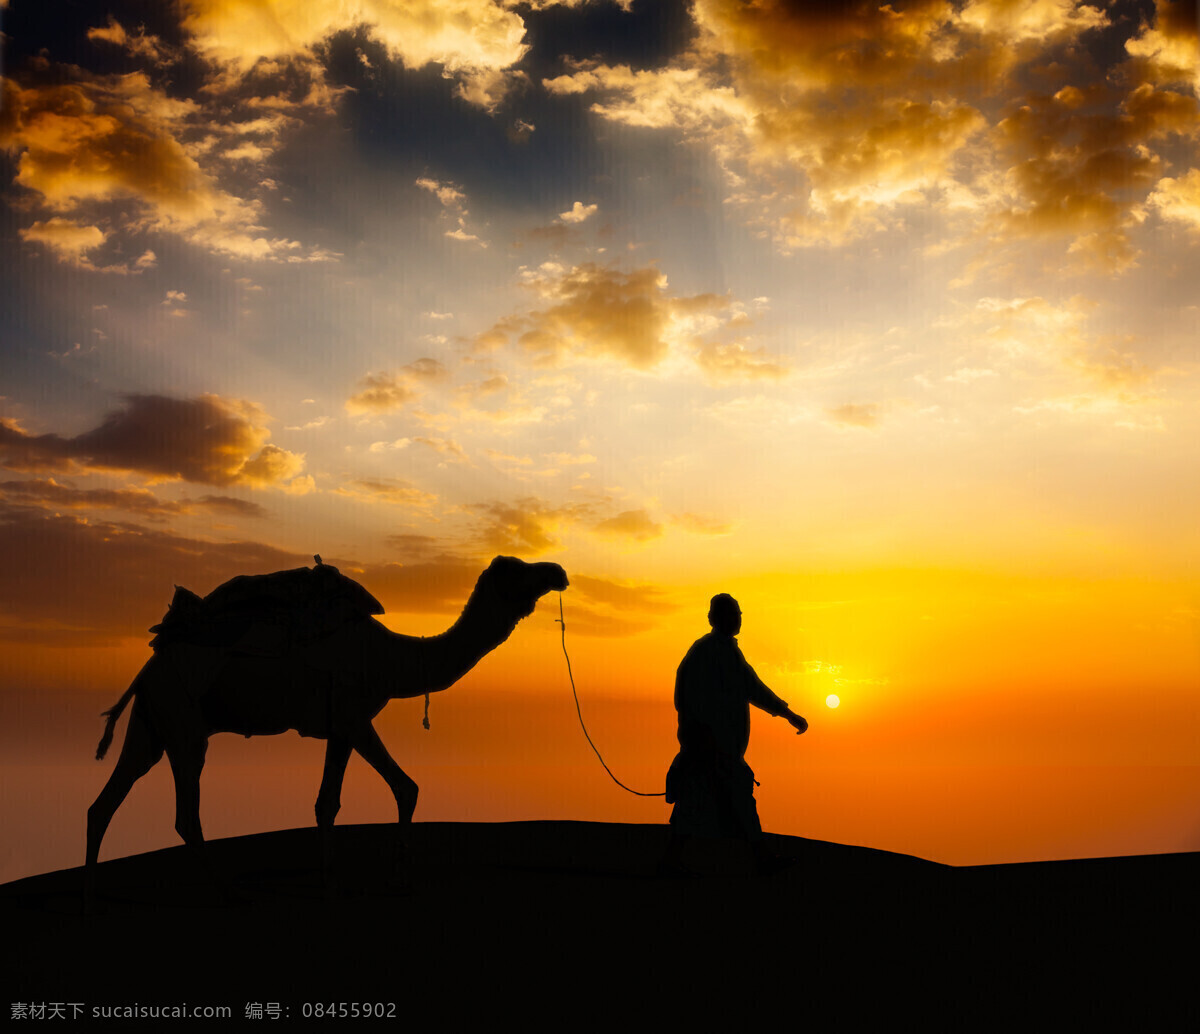 骆驼 沙漠 驼队 沙丘 荒漠 自然风景 美景 风景